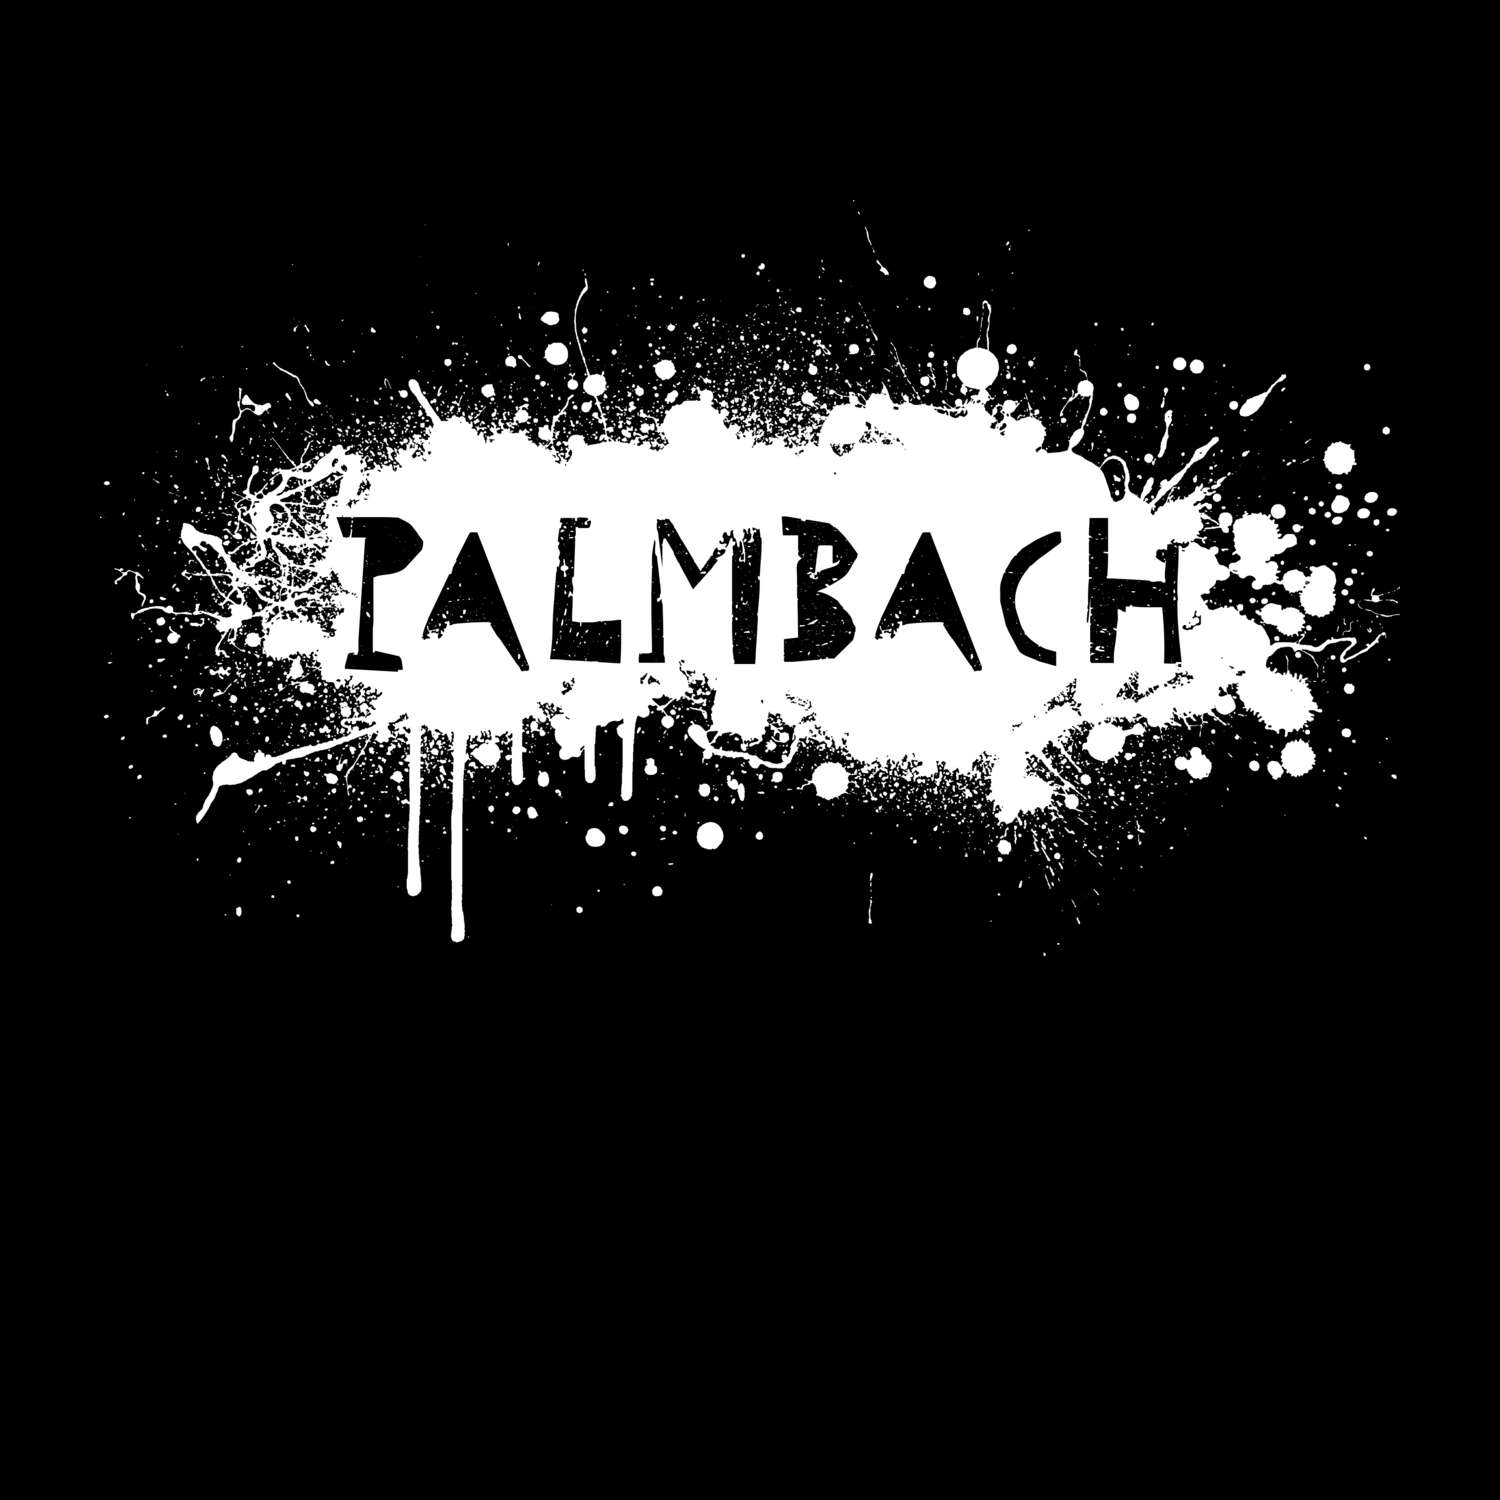 Palmbach T-Shirt »Paint Splash Punk«